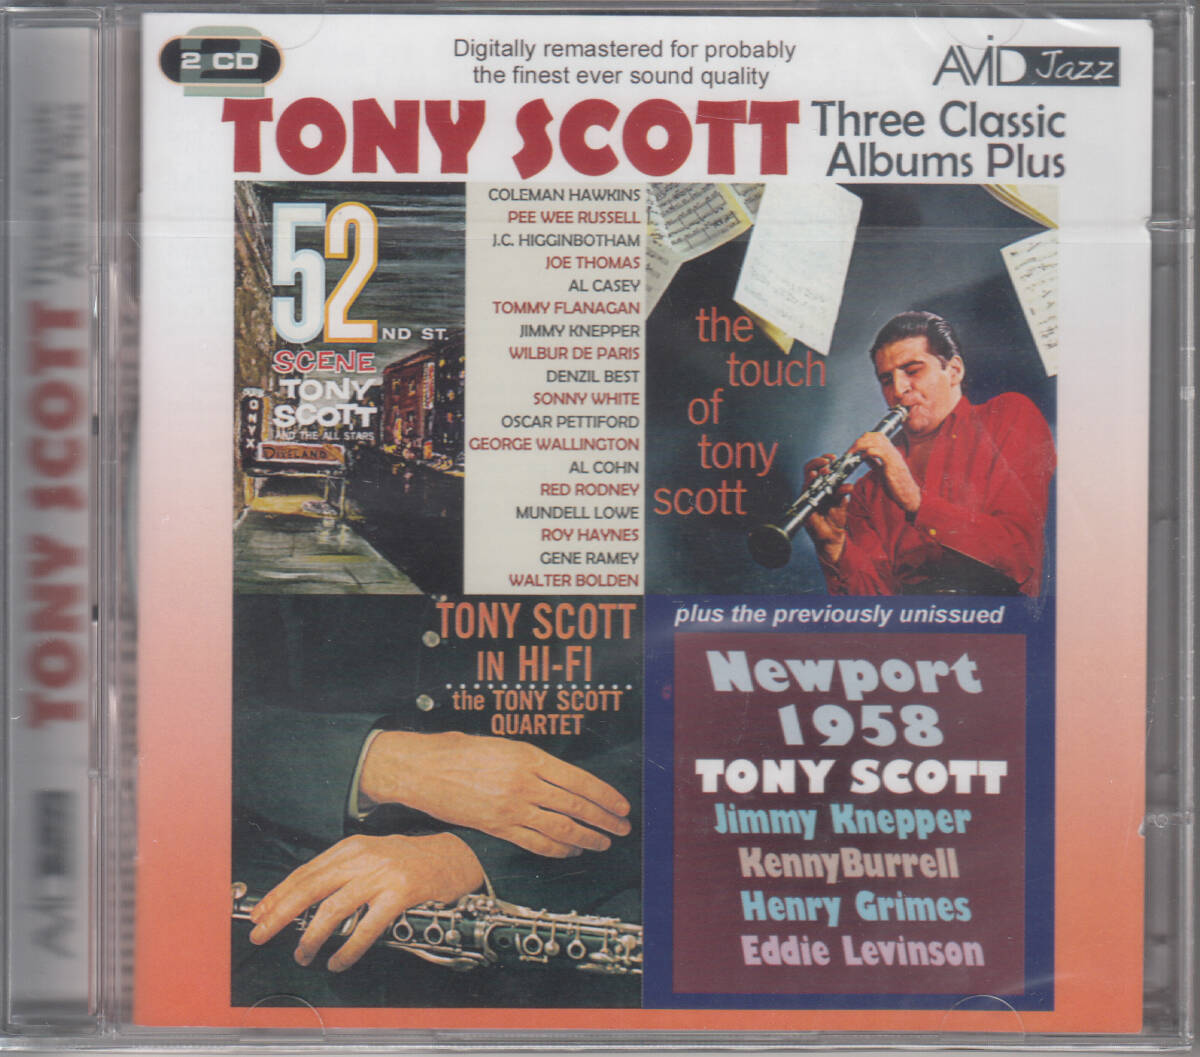 ◆新品・送料無料◆トニー・スコット/3 CLASSIC ALBUMS/52nd ST. SCENE、TONY SCOTT IN Hi-Fi、THE TOUCH OF TONY SCOTT 2枚組Import v9085_画像1